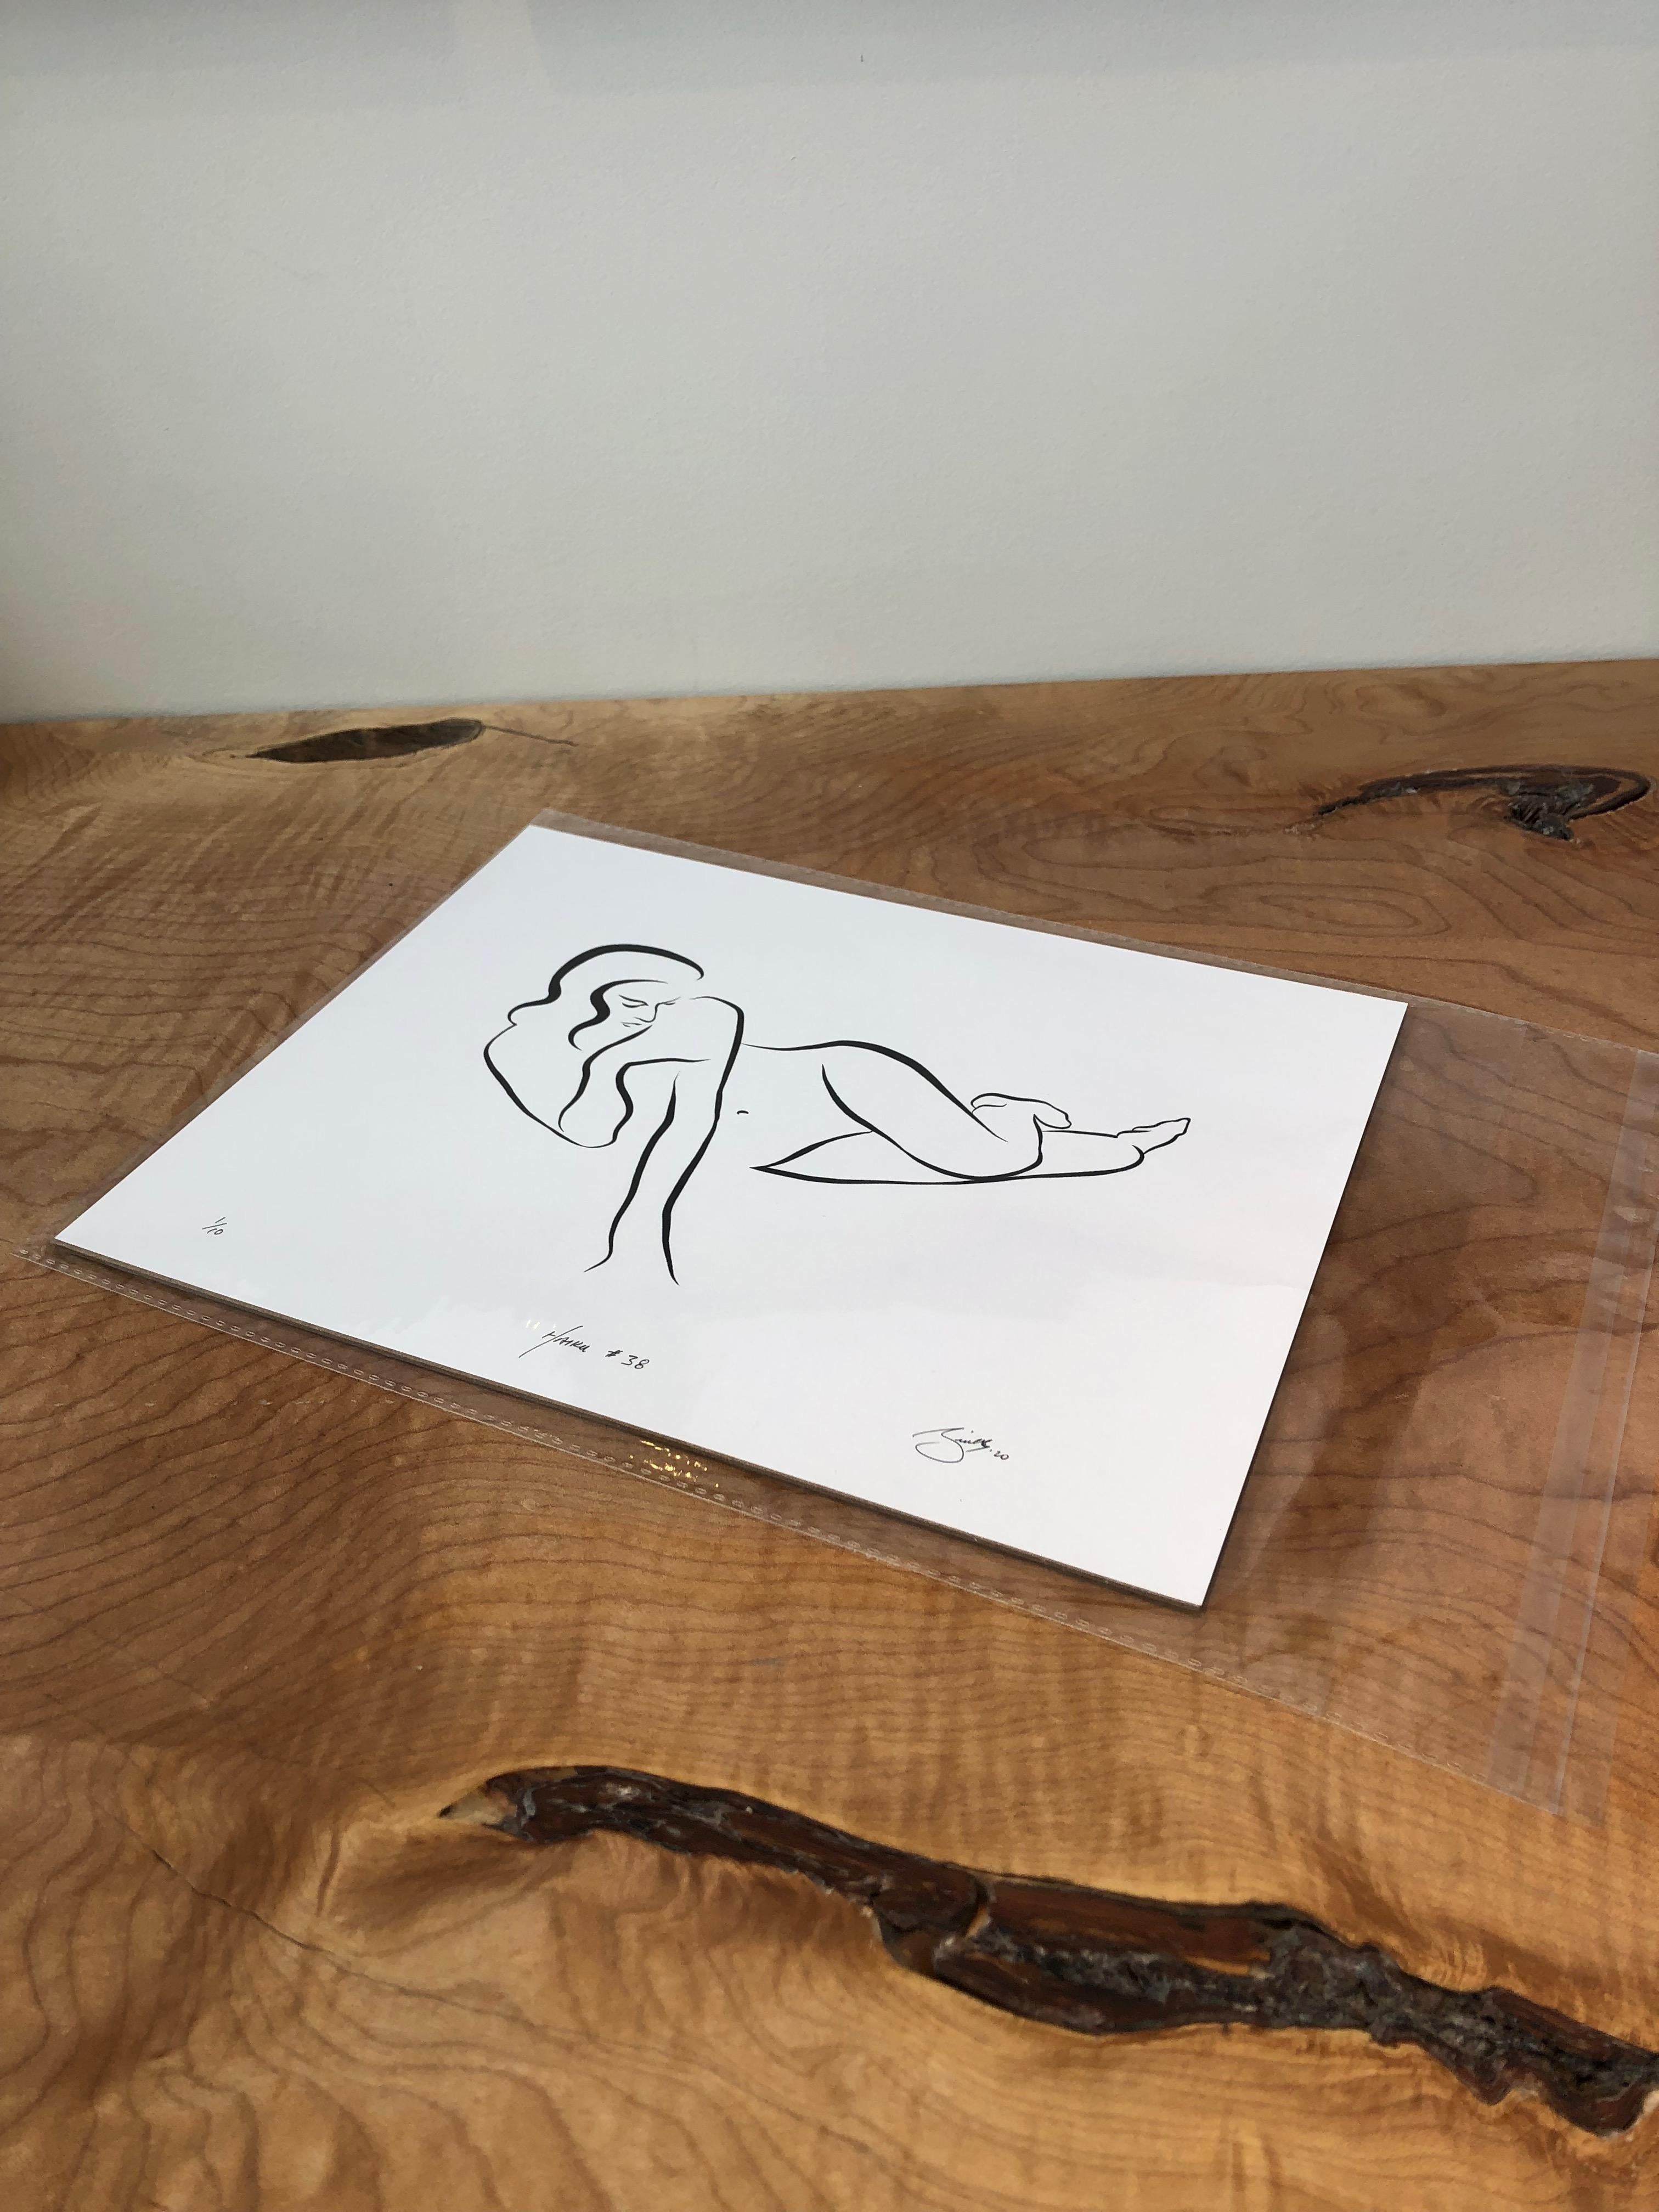 Haiku #38, 1 /50 - Digital Vector Drawing Reclining Female Nude Woman Figure  - Print by Michael Binkley